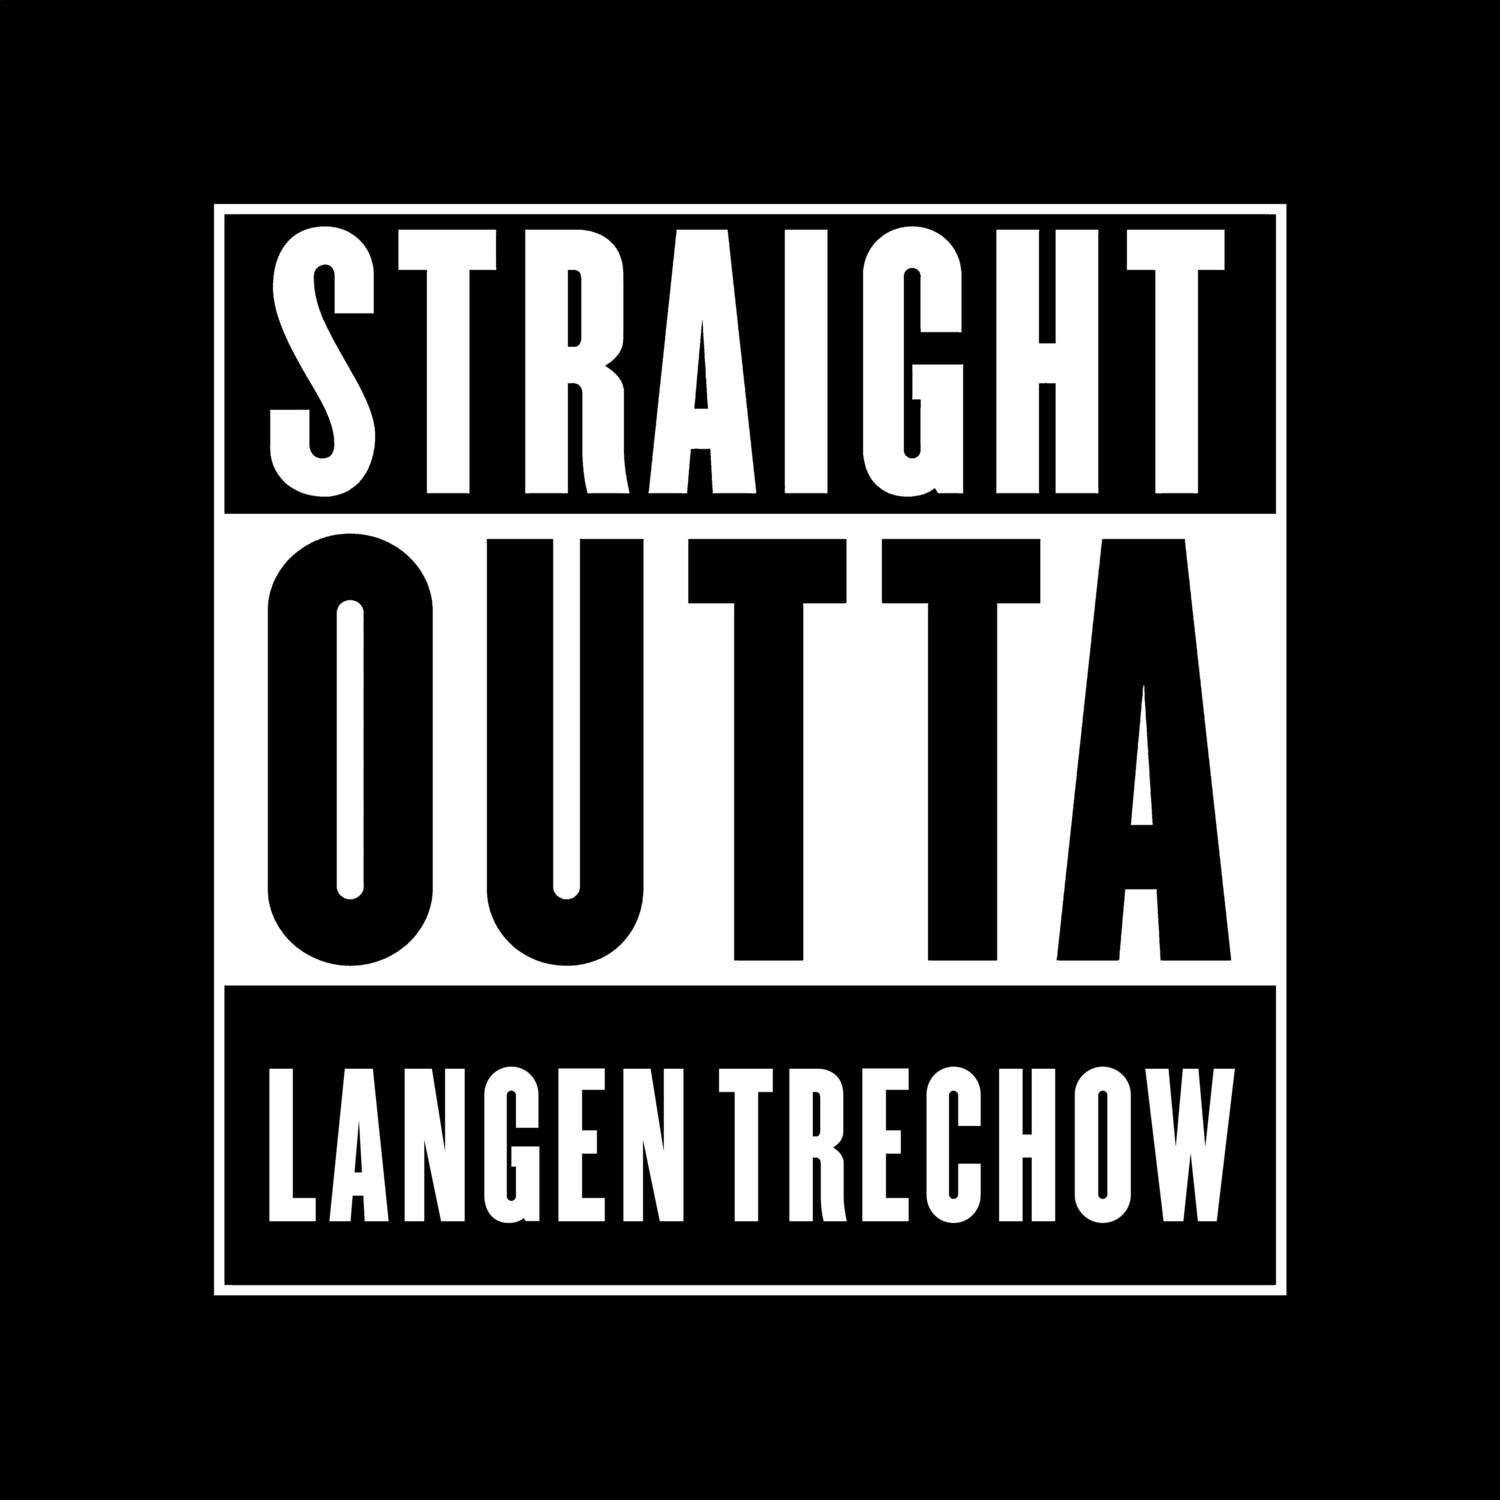 Langen Trechow T-Shirt »Straight Outta«